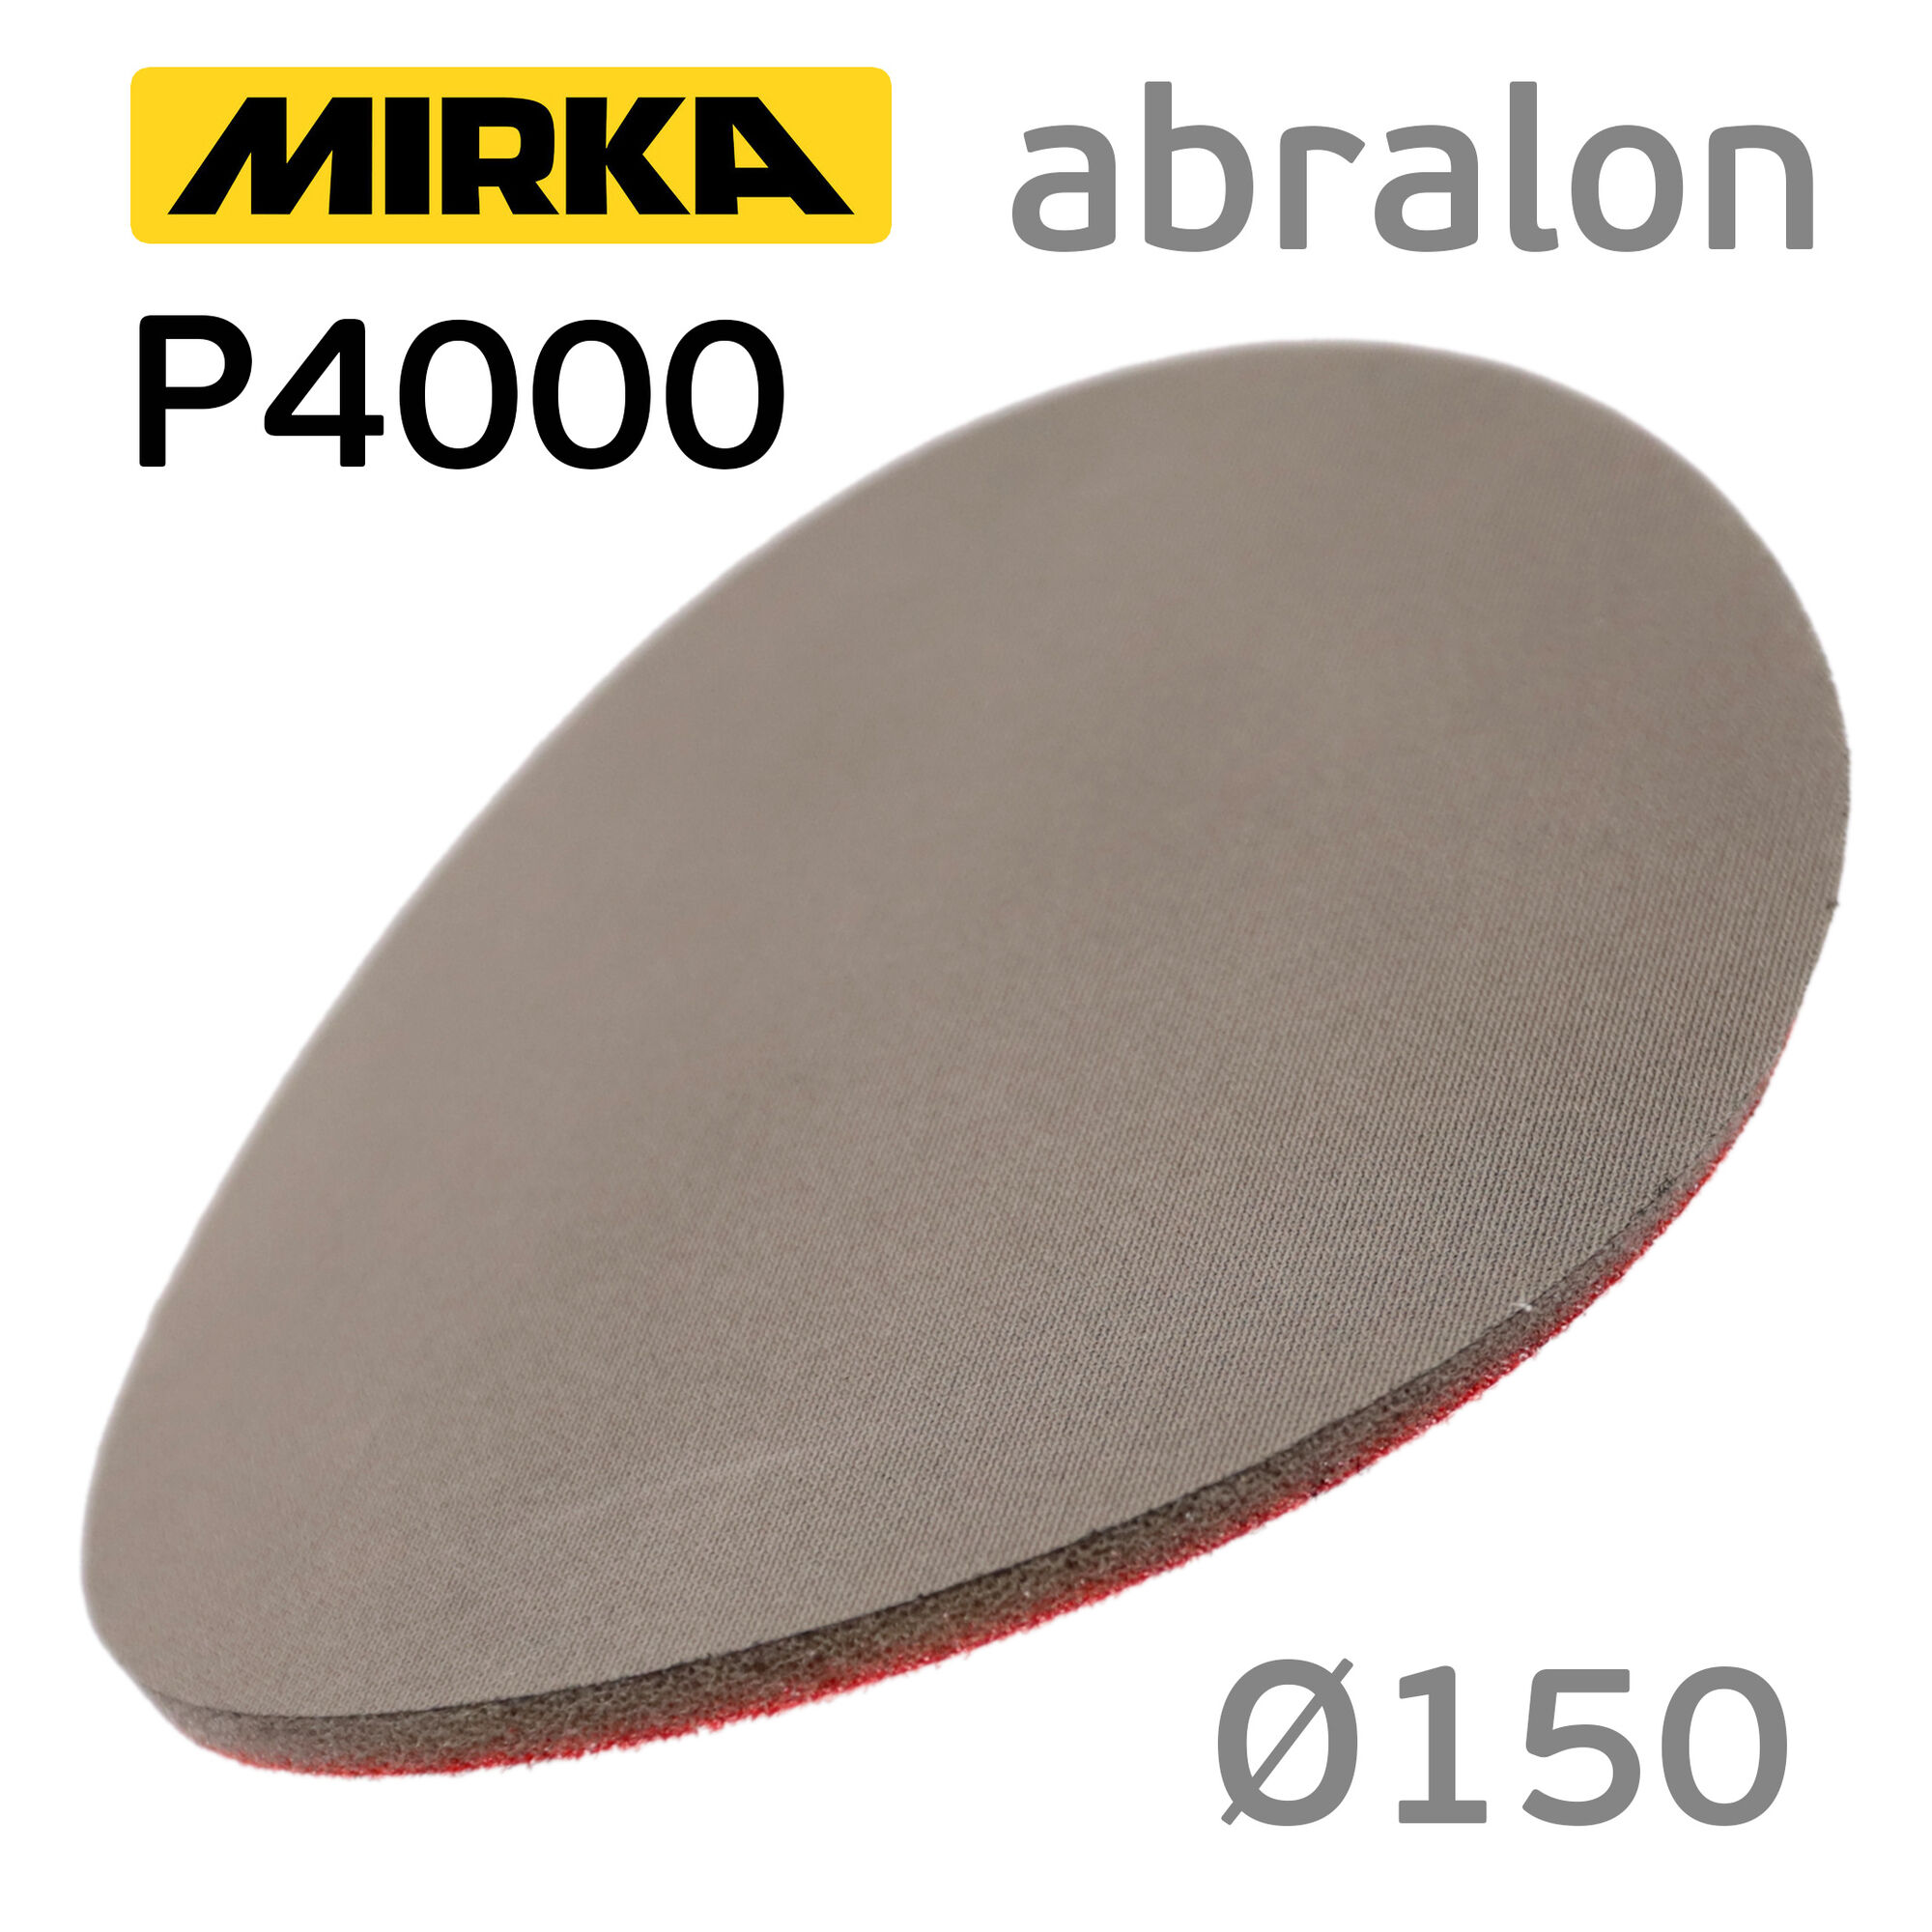 Круг Mirka Abralon Р4000 (150мм) абразив на поролоне, липучка, тканево-поролоновая основа